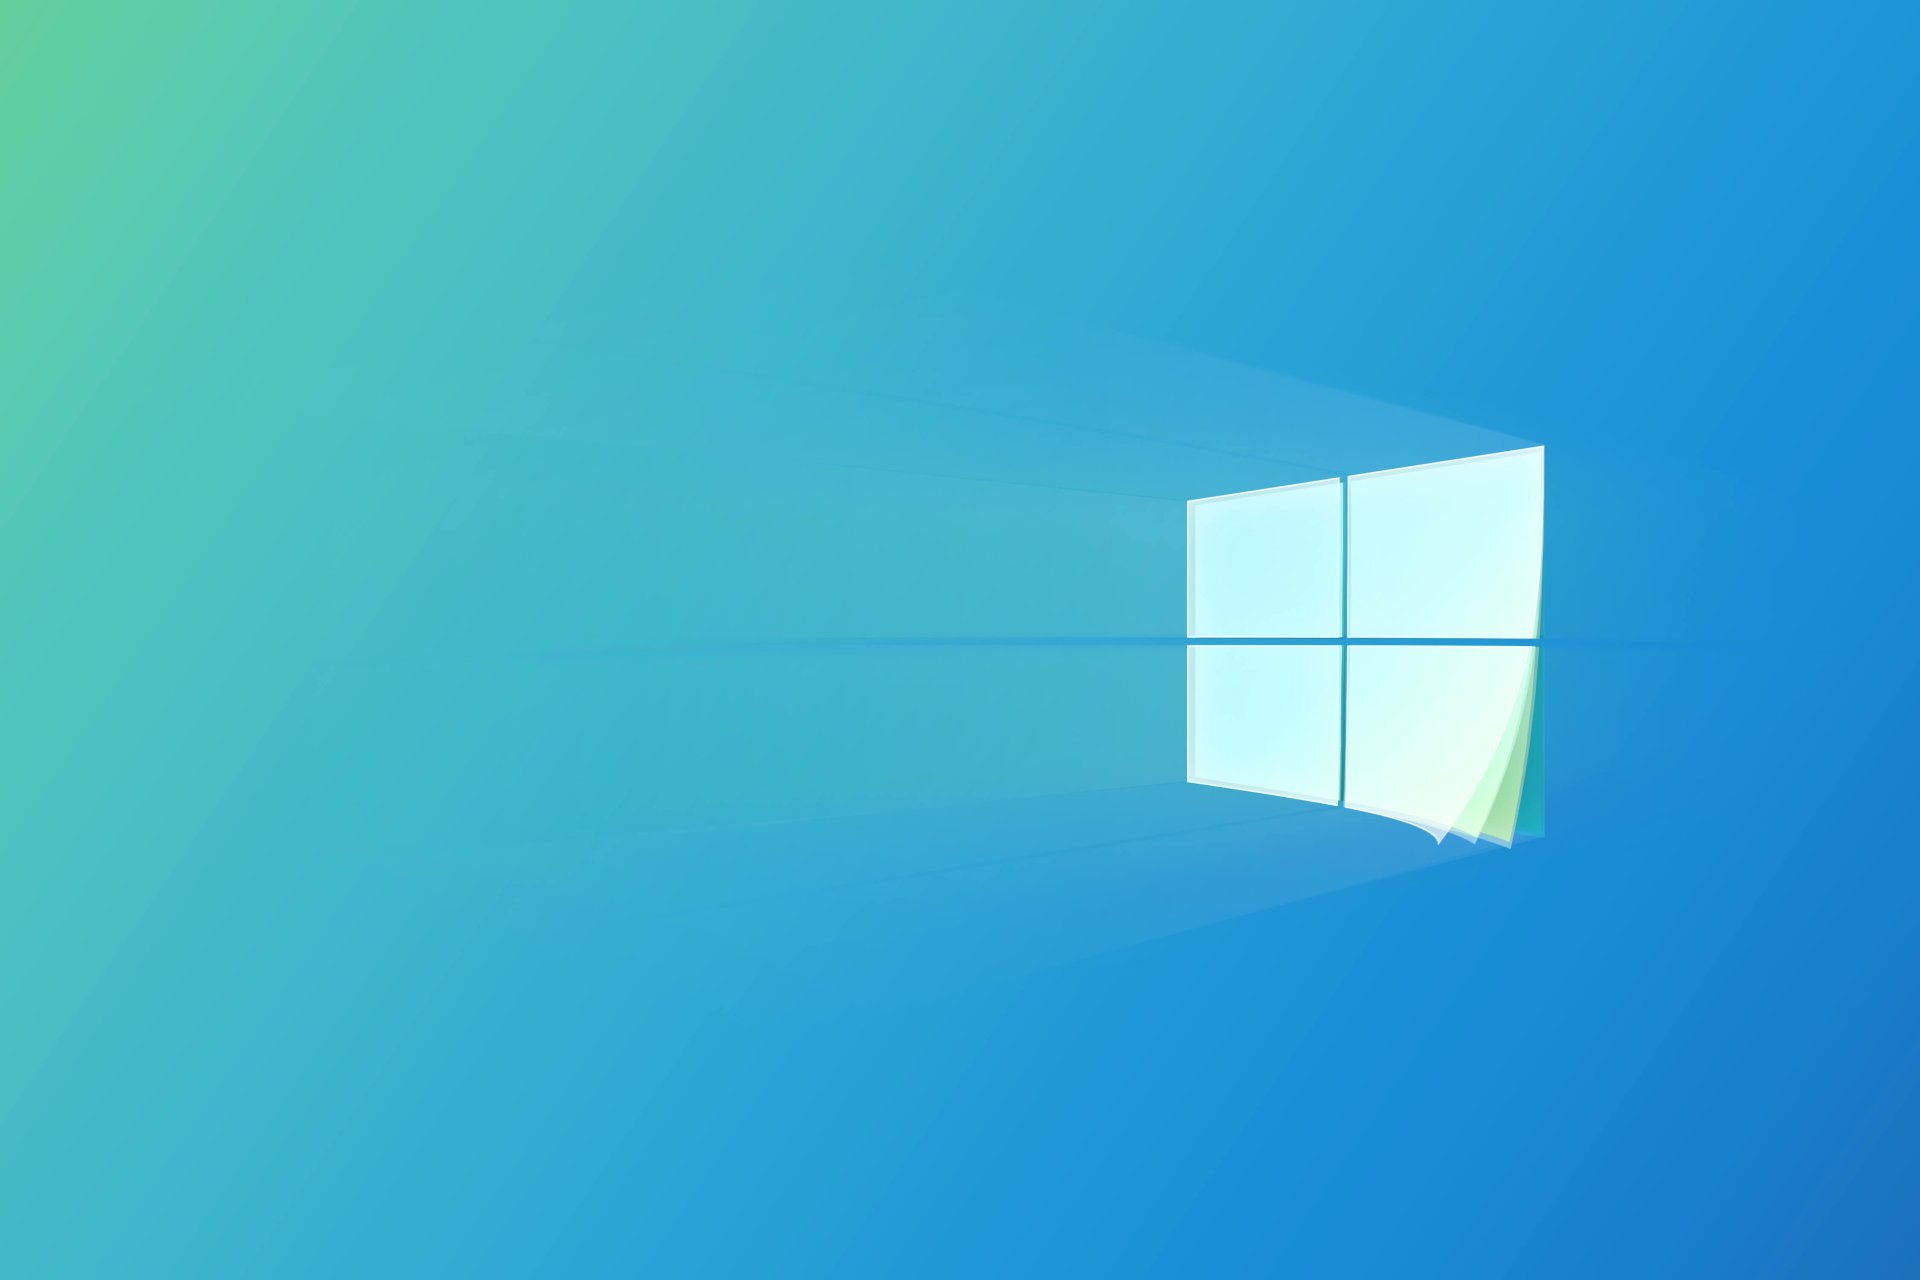 Hãy chiêm ngưỡng thiết kế trôi chảy của Logo Windows 10 do chính Genrole Caspe thiết kế. Với sự pha trộn giữa sự hiện đại và đẳng cấp, Logo Windows 10 này chắc chắn sẽ khiến bạn ấn tượng ngay từ cái nhìn đầu tiên.